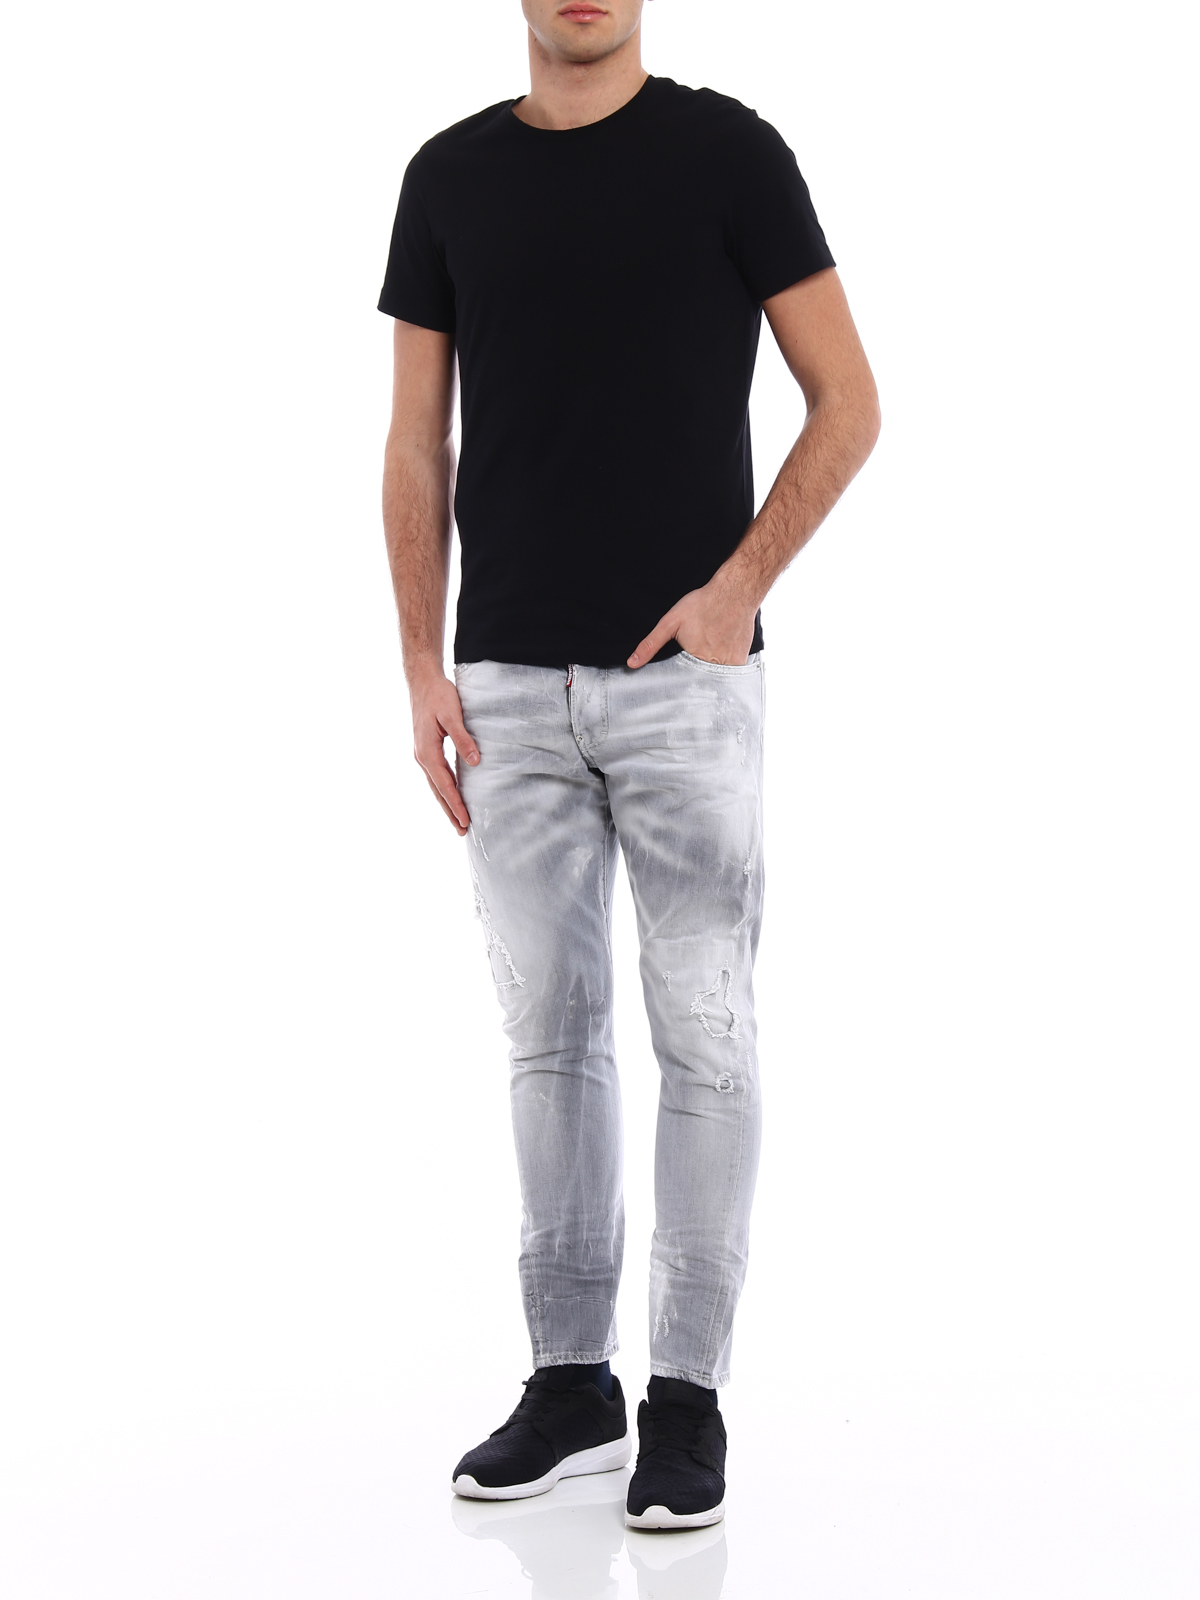 Skinny jeans Dsquared2 - Sexy Twist light grey denim jeans